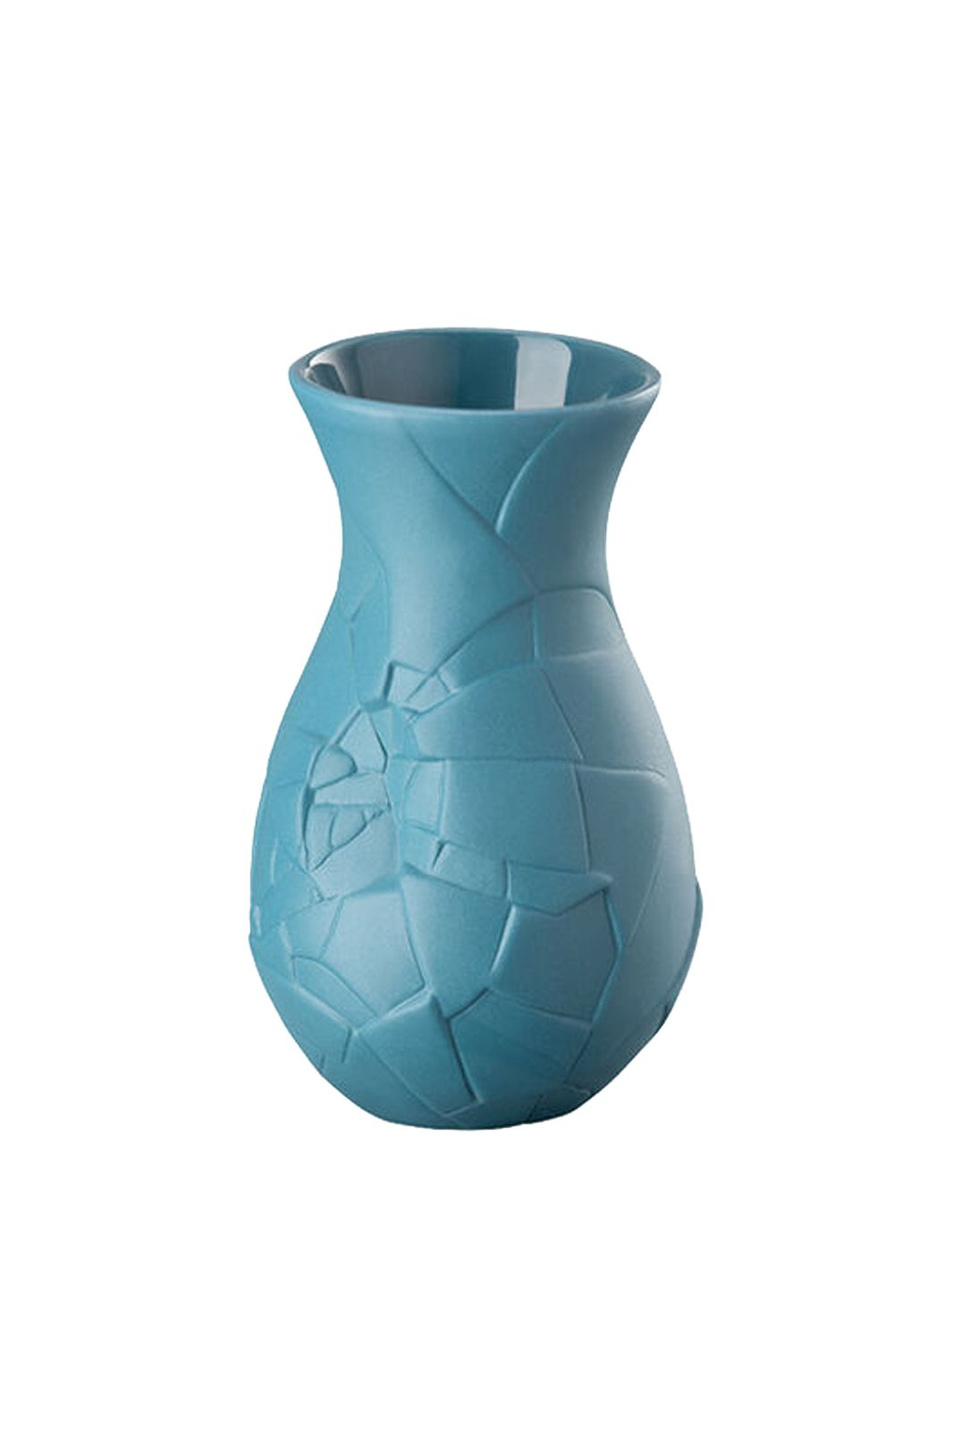 Не имеет пола Rosenthal Ваза Vase of Phases Abyss, 10 см (цвет ), артикул 14255-426328-26010 | Фото 1